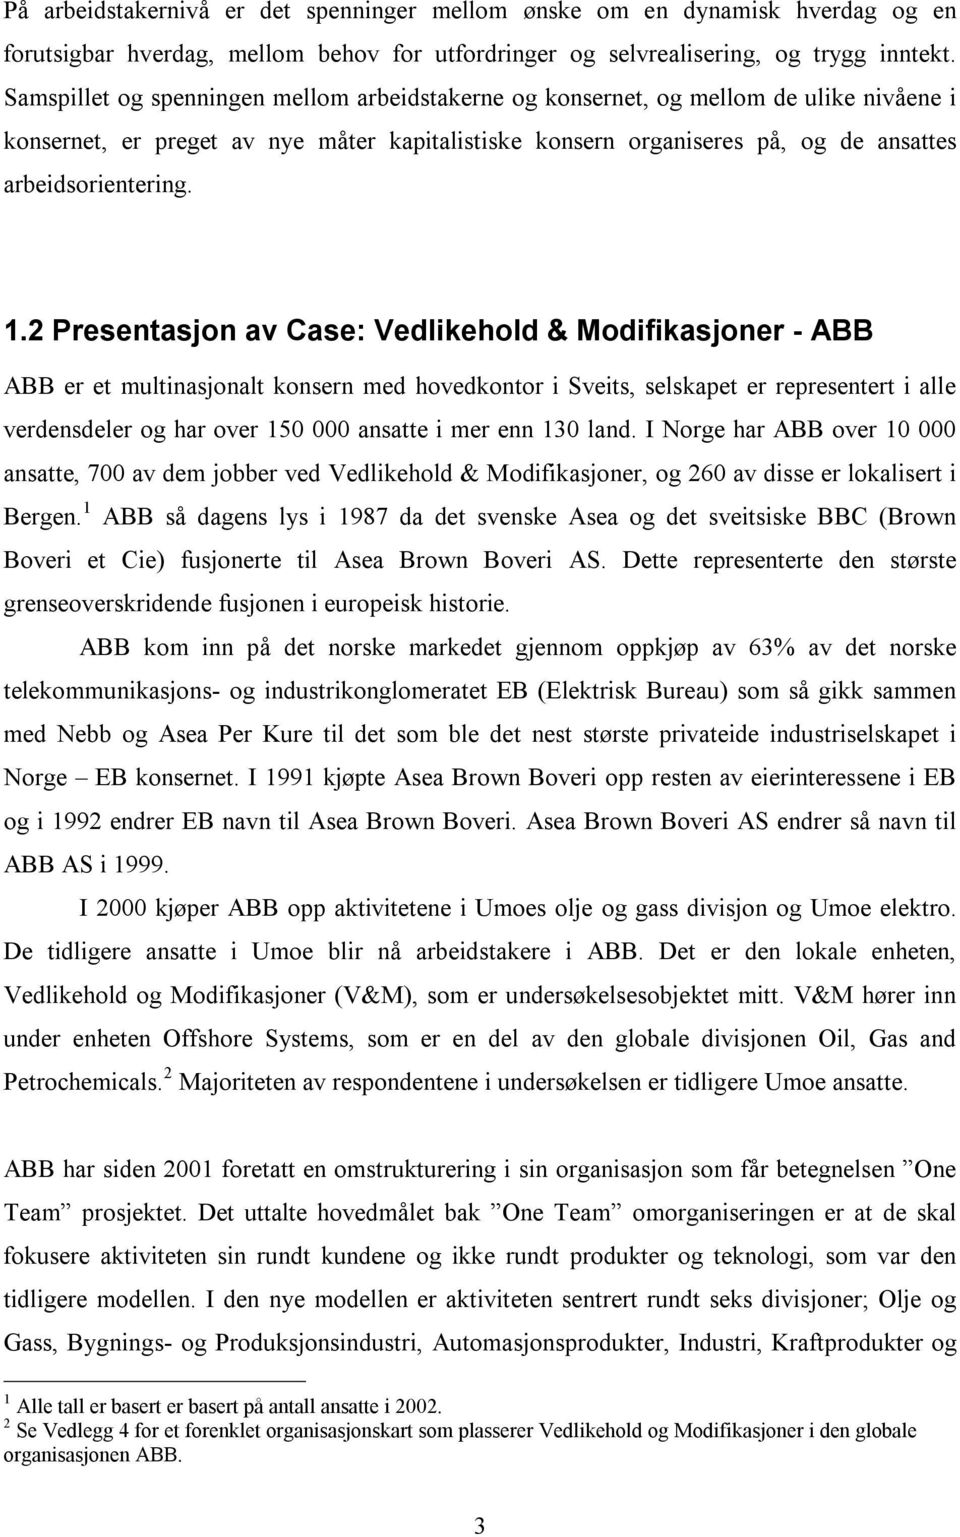 2 Presentasjon av Case: Vedlikehold & Modifikasjoner - ABB ABB er et multinasjonalt konsern med hovedkontor i Sveits, selskapet er representert i alle verdensdeler og har over 150 000 ansatte i mer